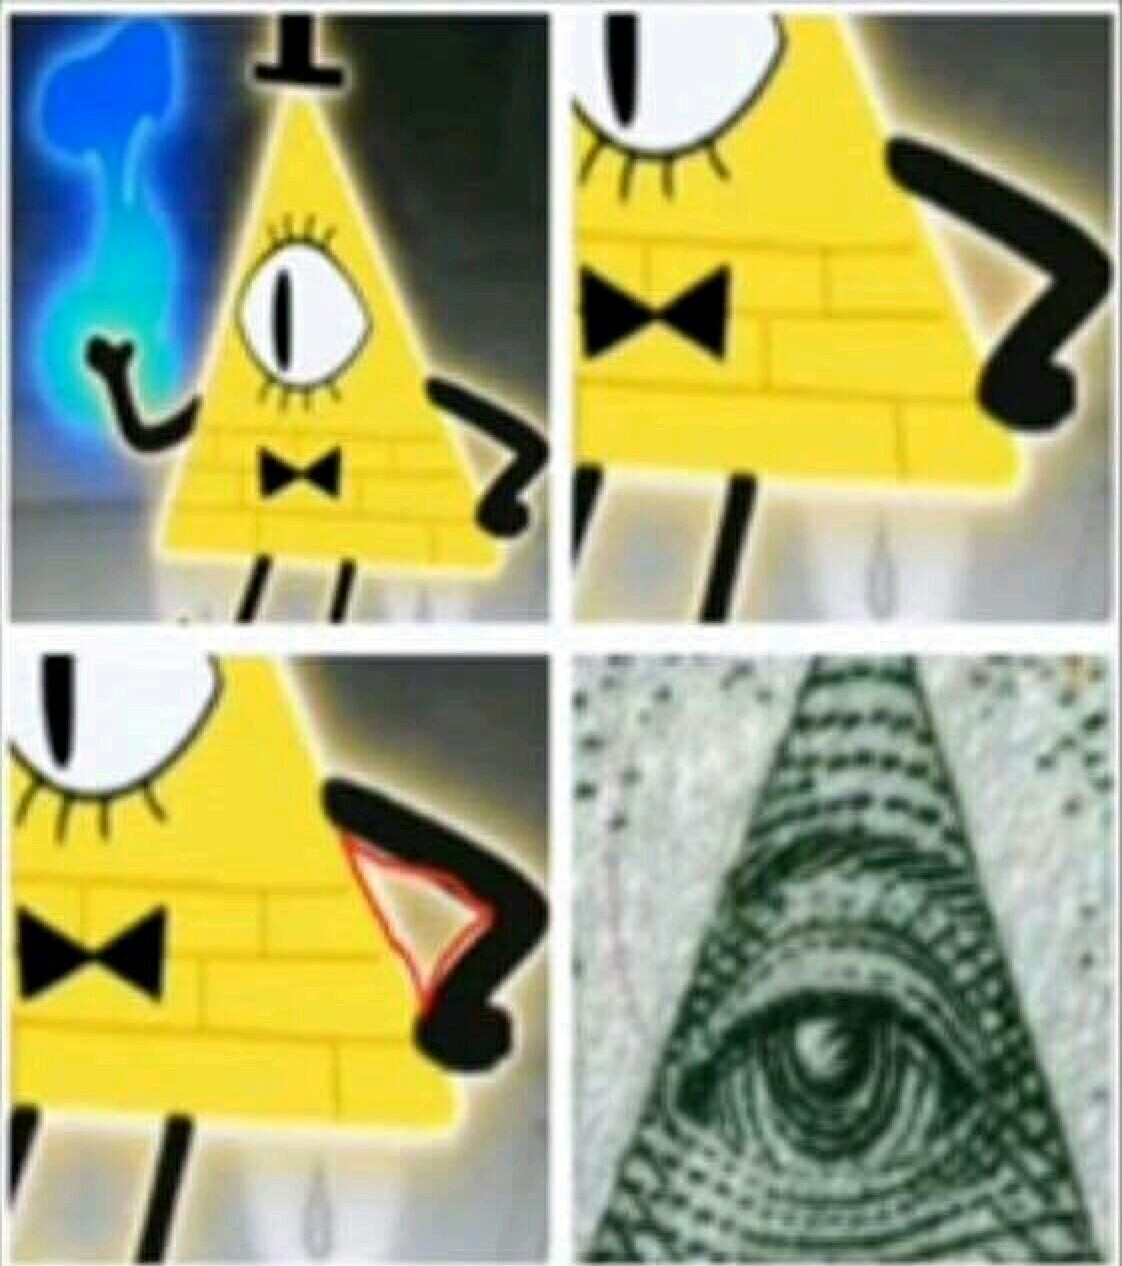 Illuminati - meme